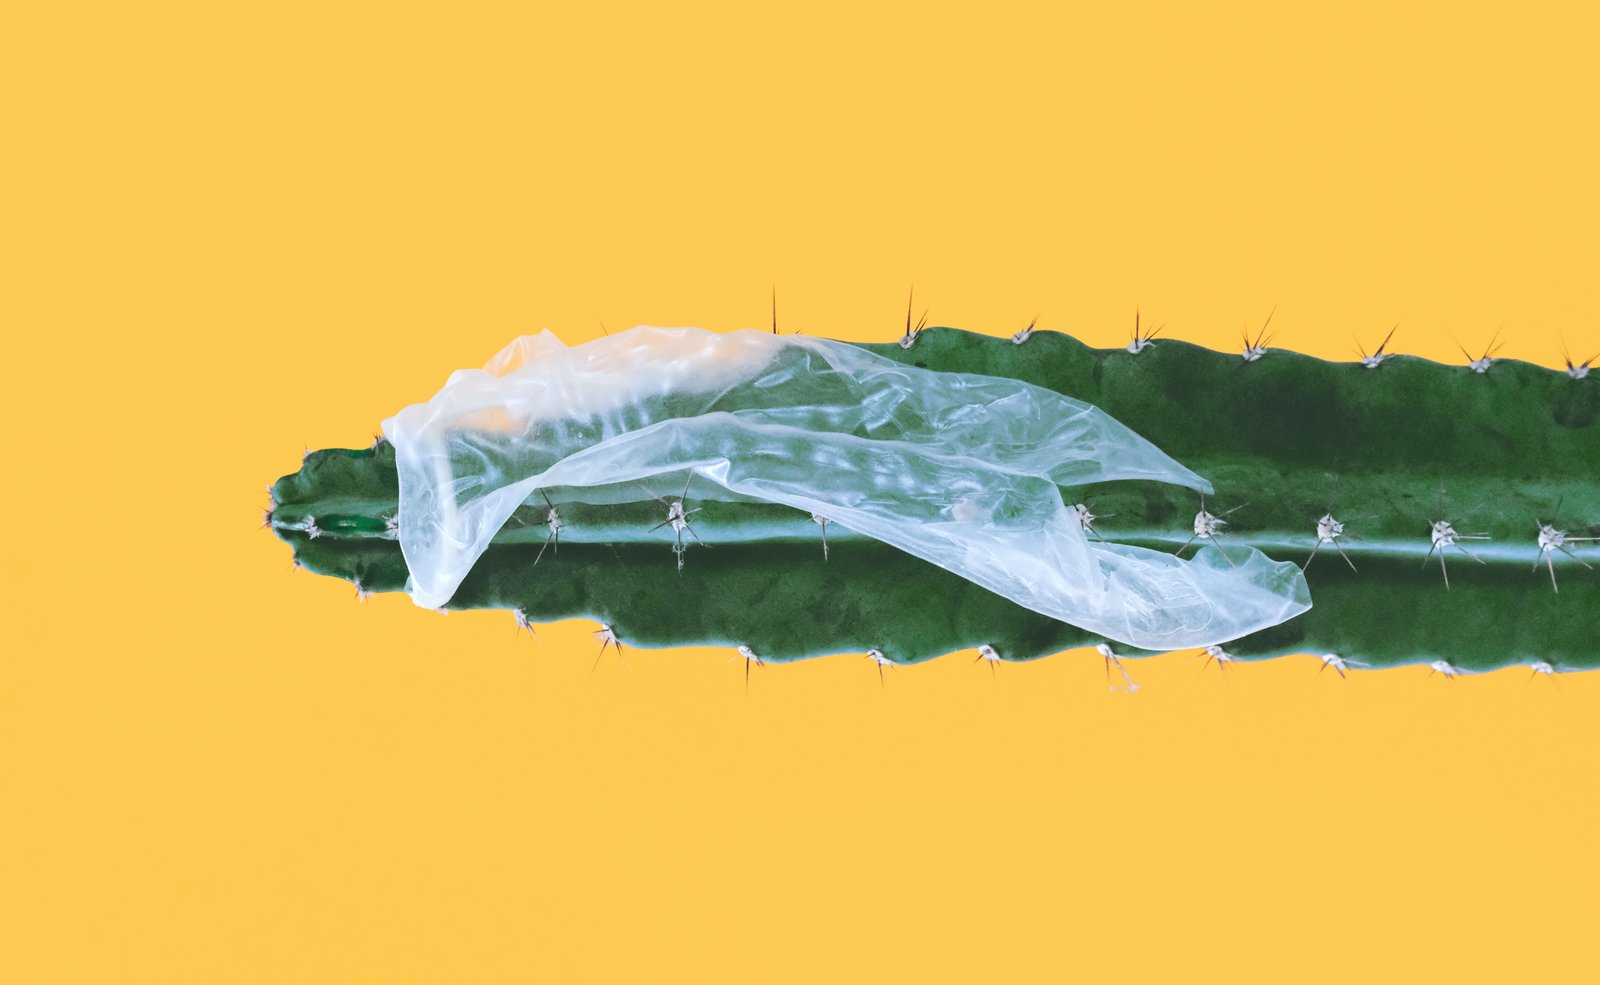 Rikkinäinen kondomi jumissa kaktuksen päällä